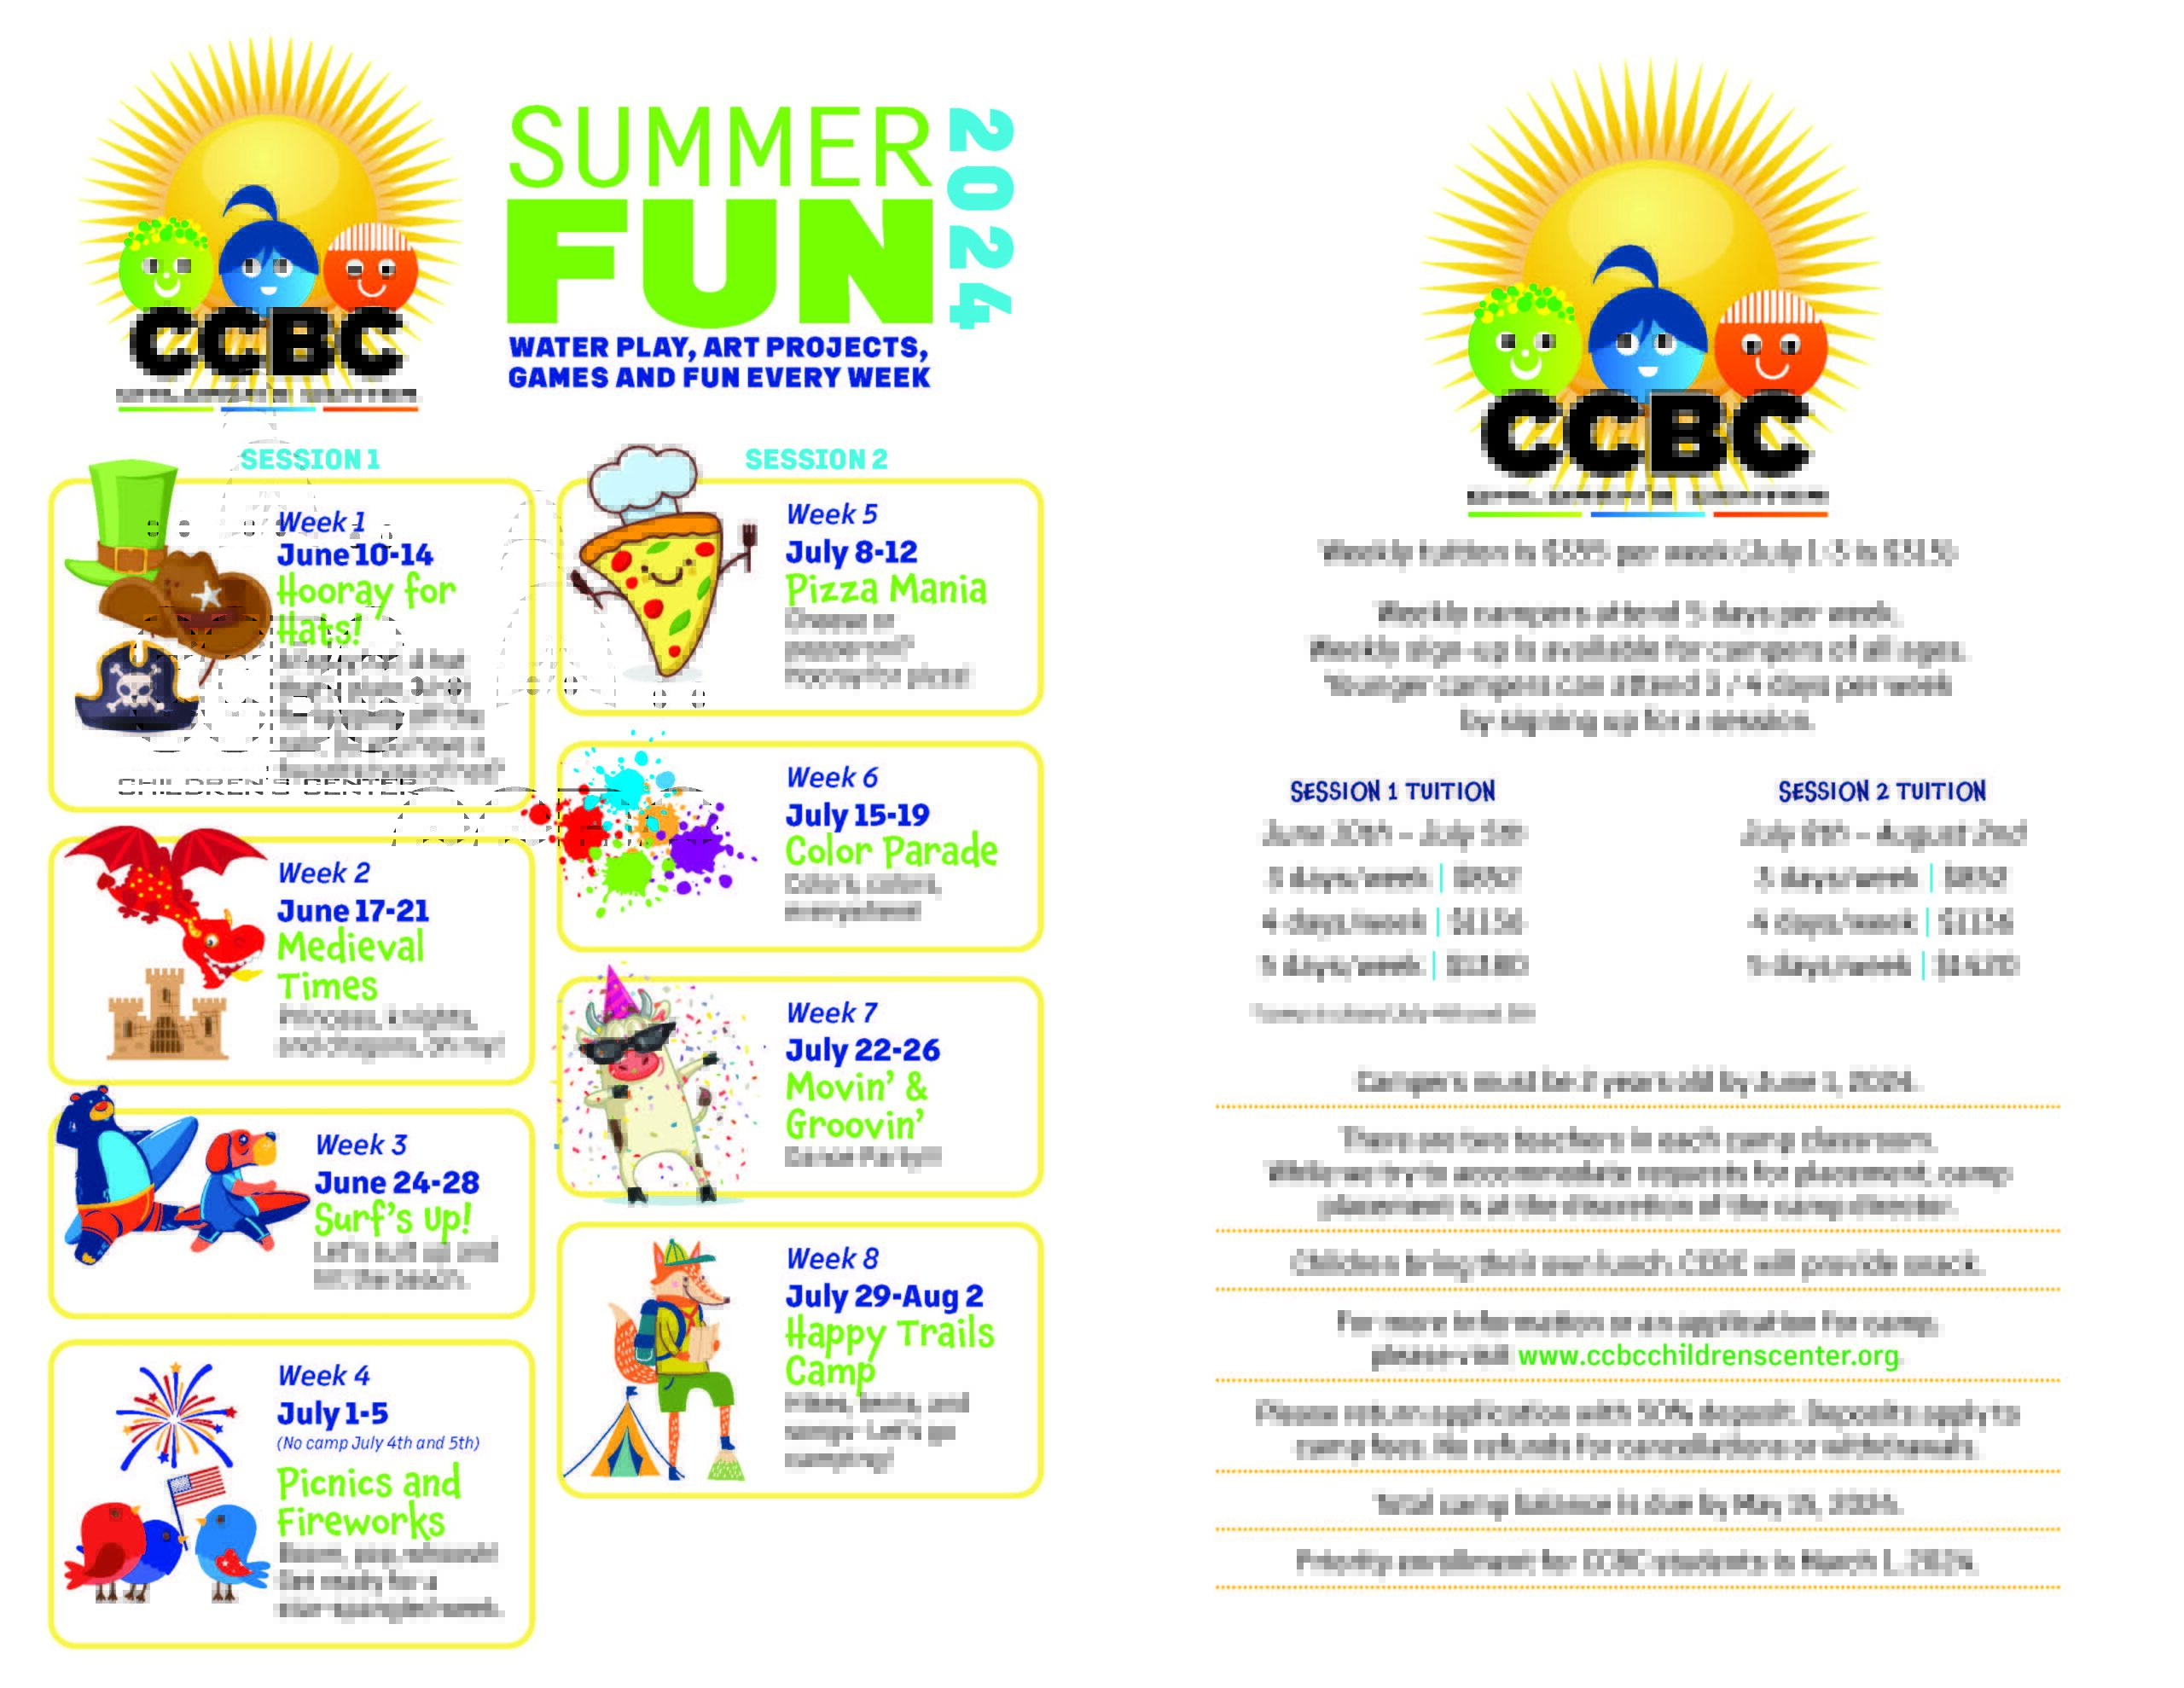 CCBC Summer Camp CCBC Summer Camp CCBC Children's Center